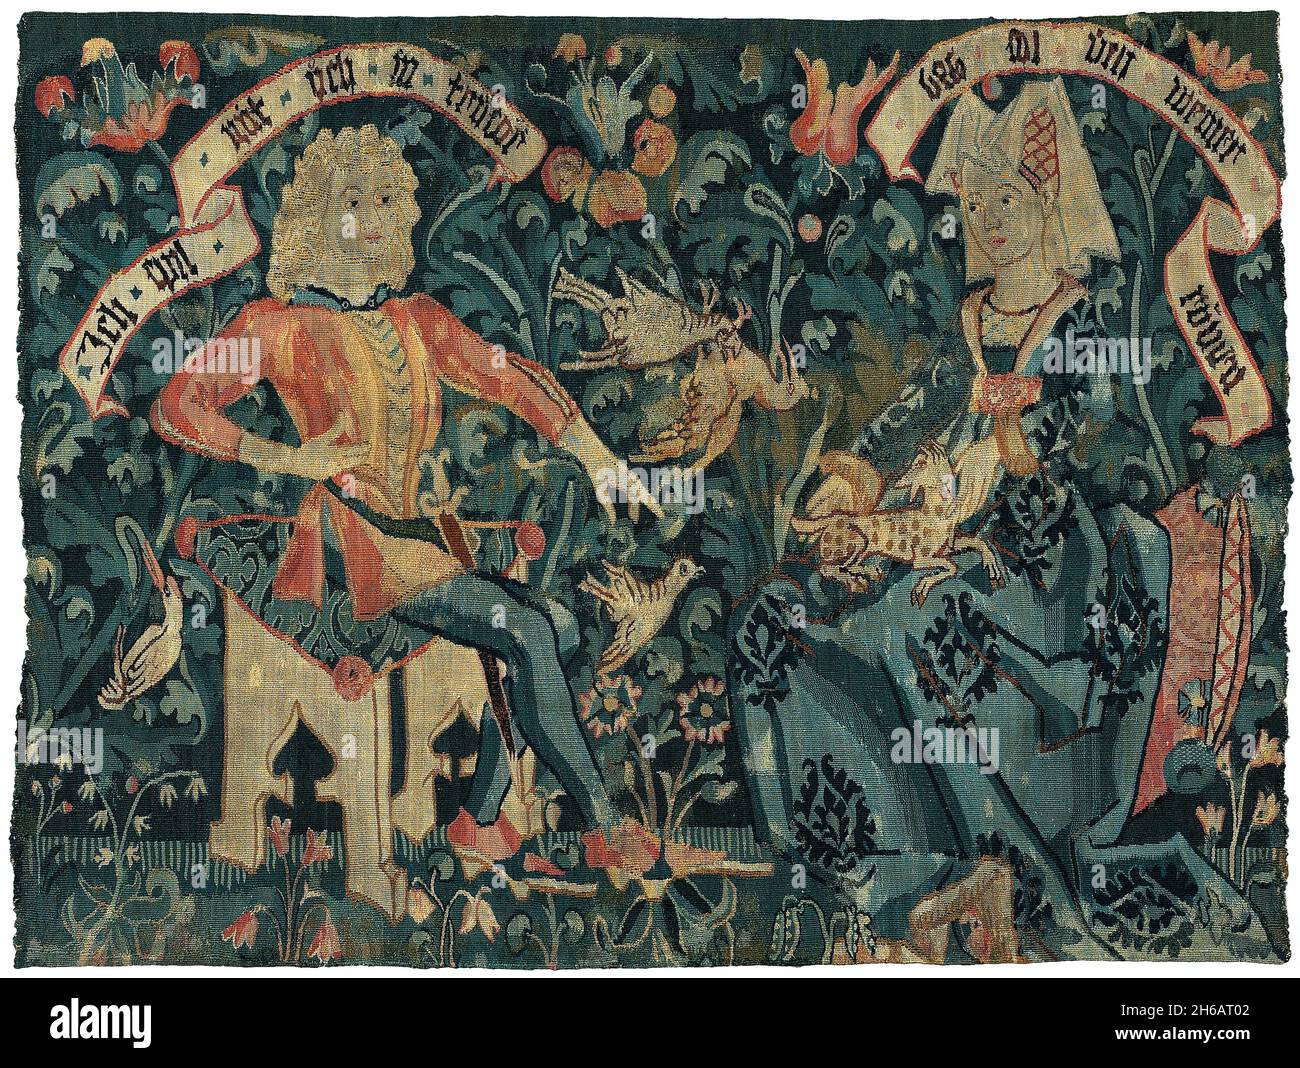 Gli amanti, Basilea, 1490/1500. Gli amanti che si pedettano la loro fede l'uno verso l'altro. Foto Stock